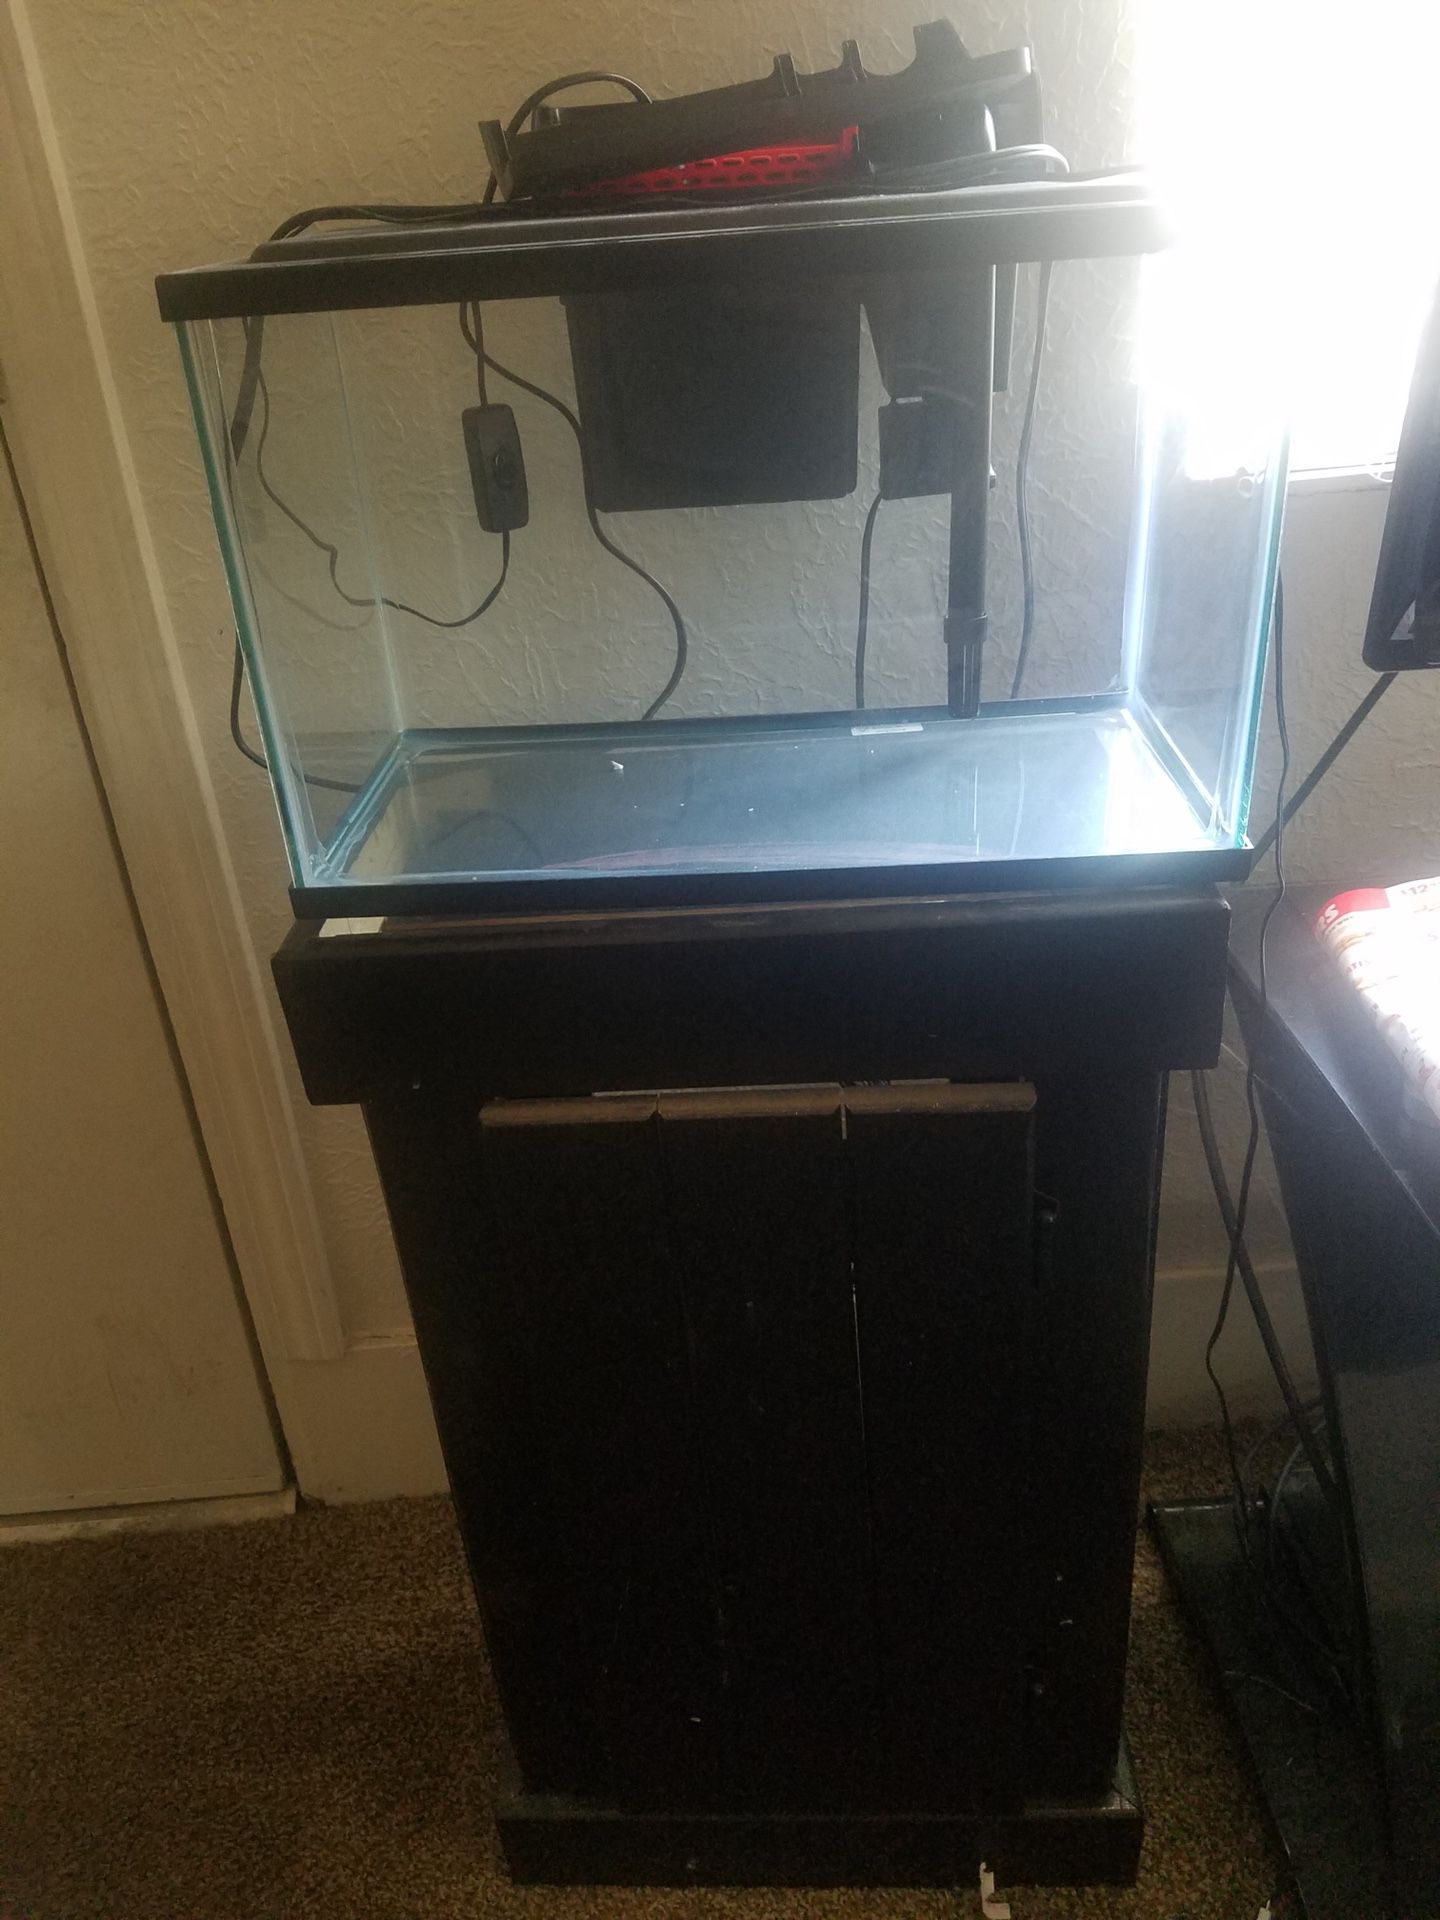 New fish tank